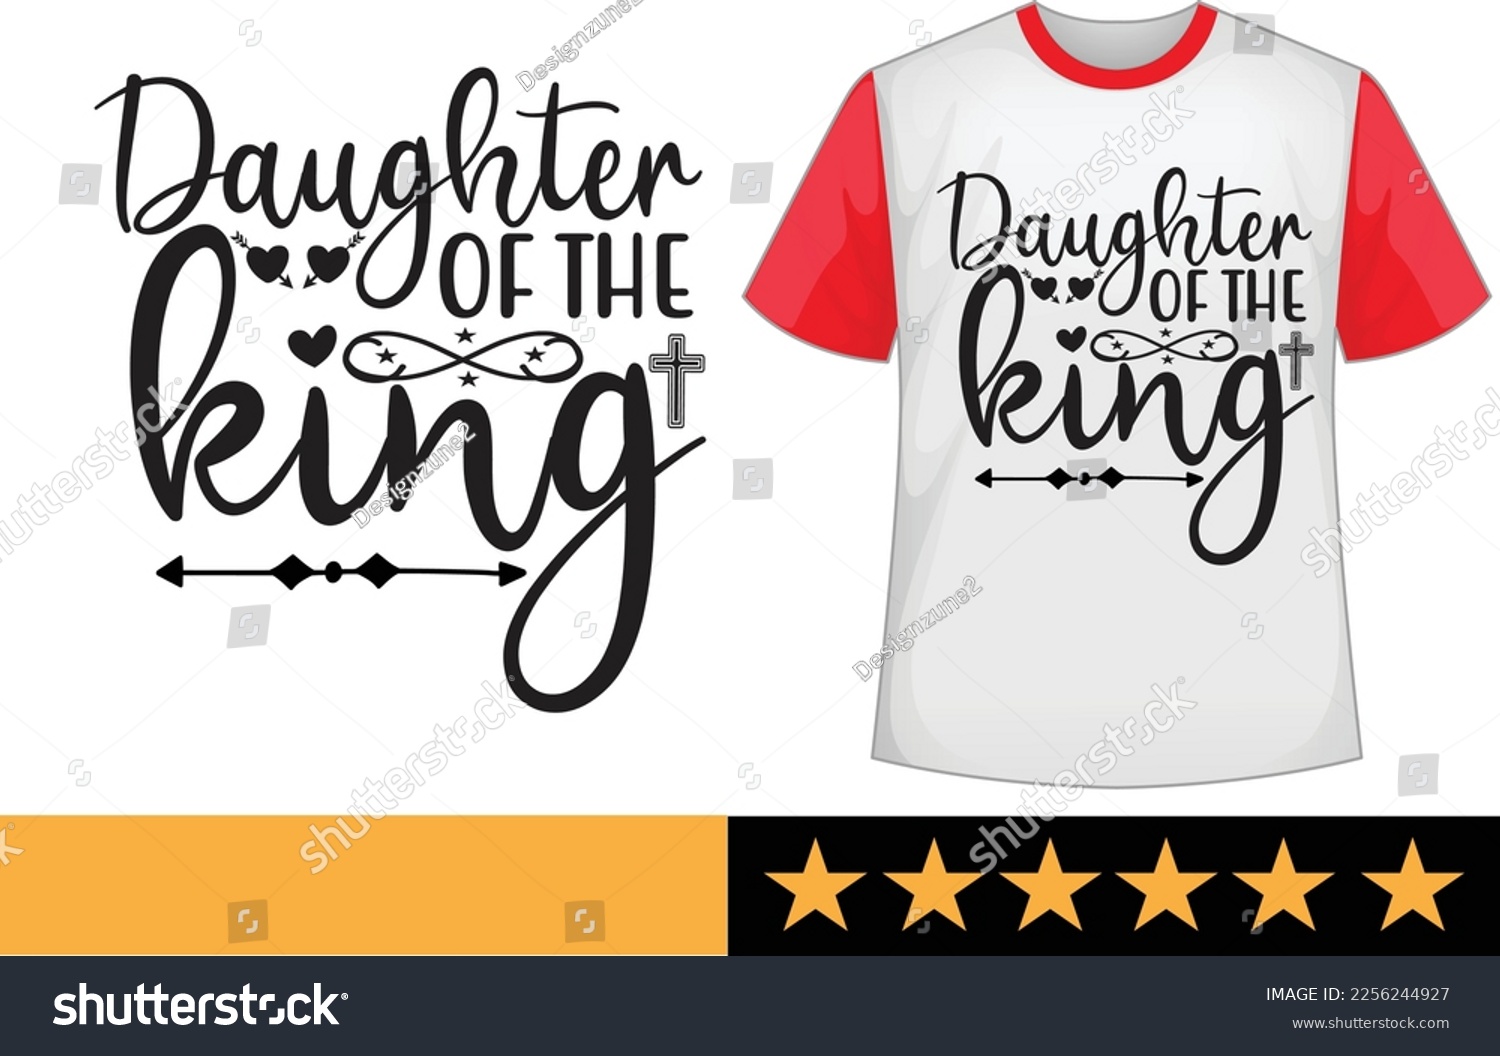 SVG of Daughter of the king svg t shirt design svg